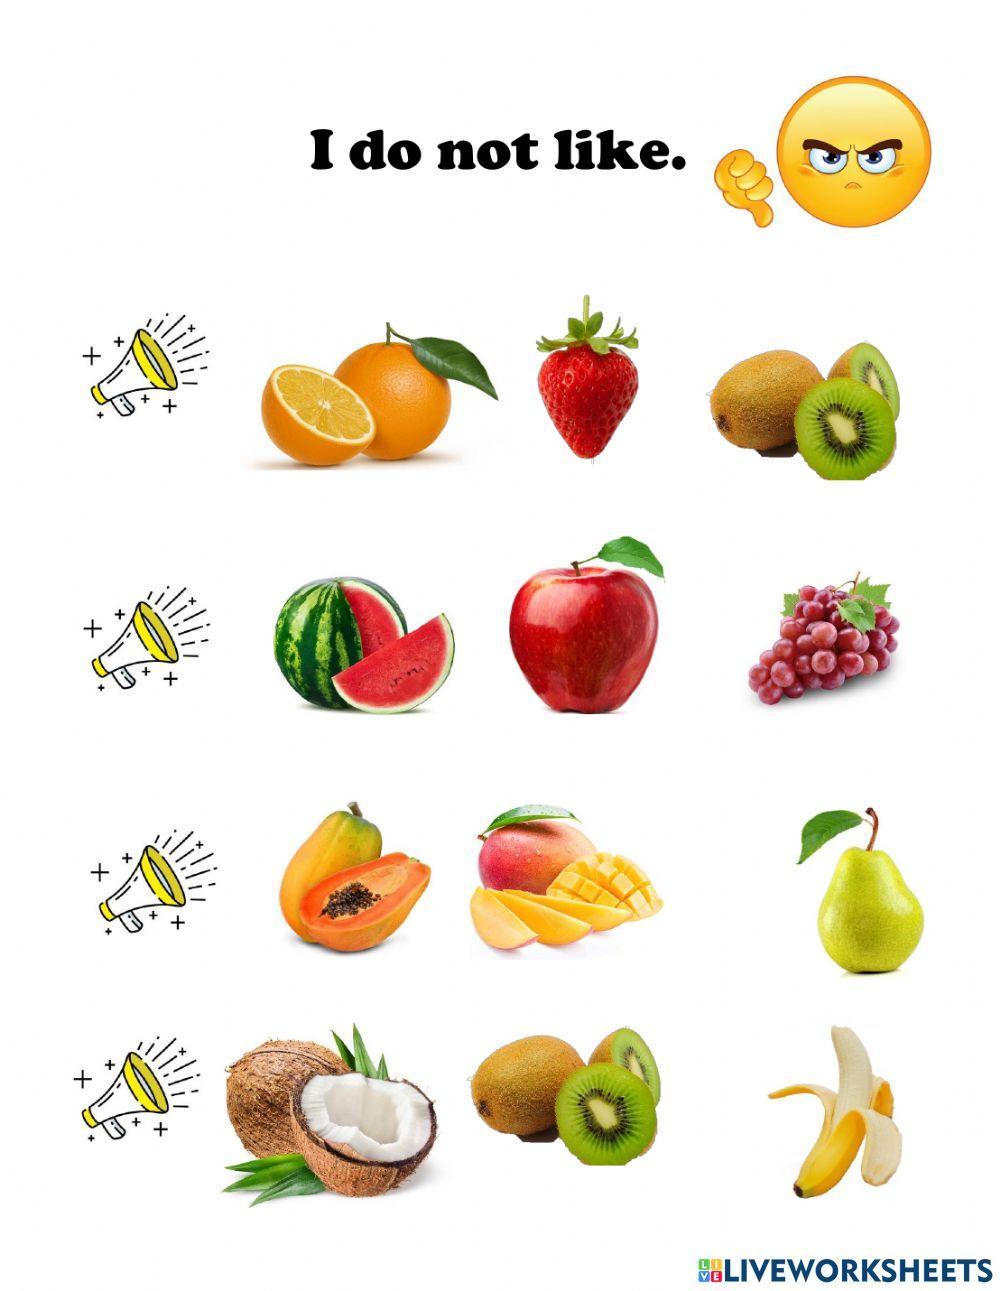 I like and I do not like fruits